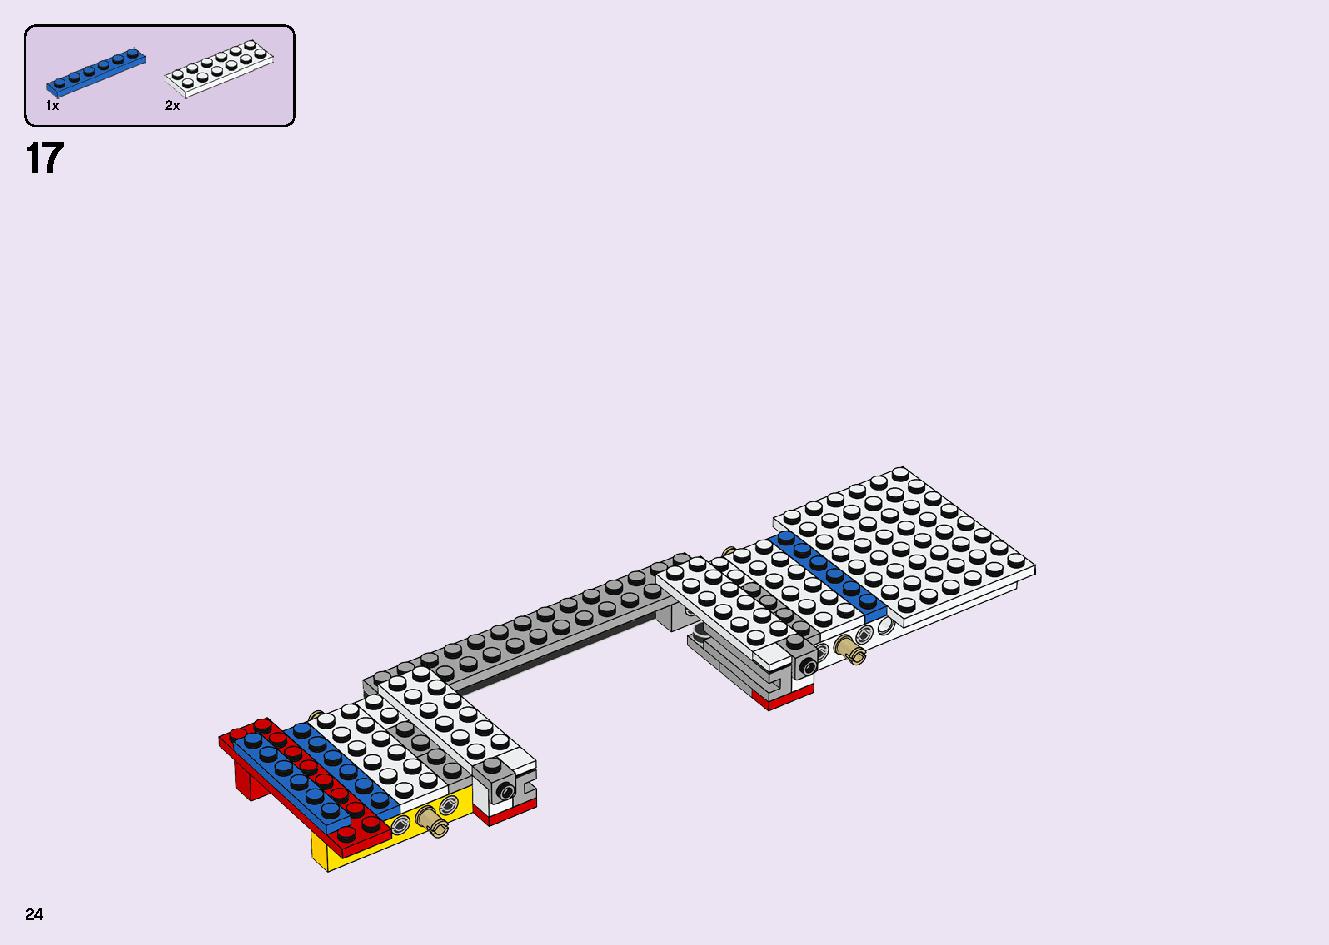 フレンズのうきうきハッピー・バス 41395 レゴの商品情報 レゴの説明書・組立方法 24 page